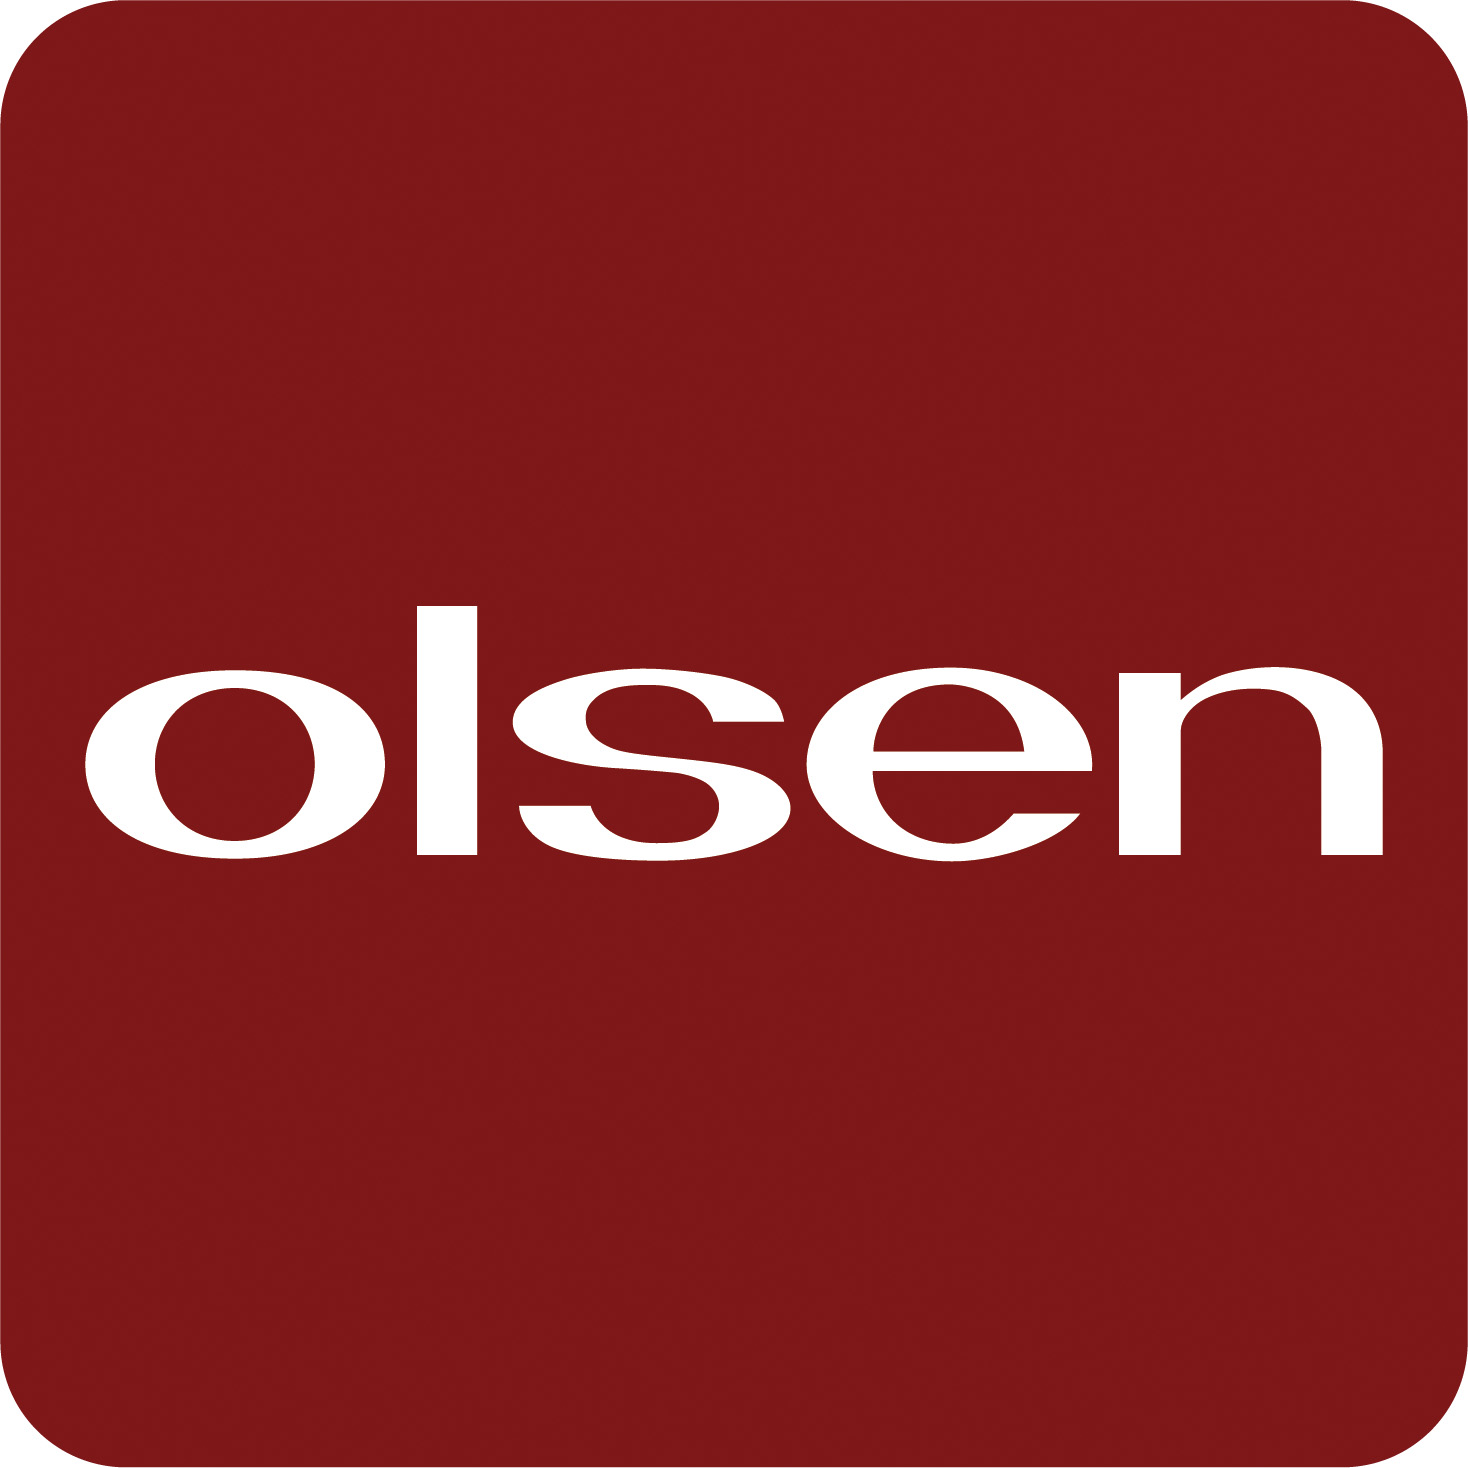 Olssen Logo photo - 1